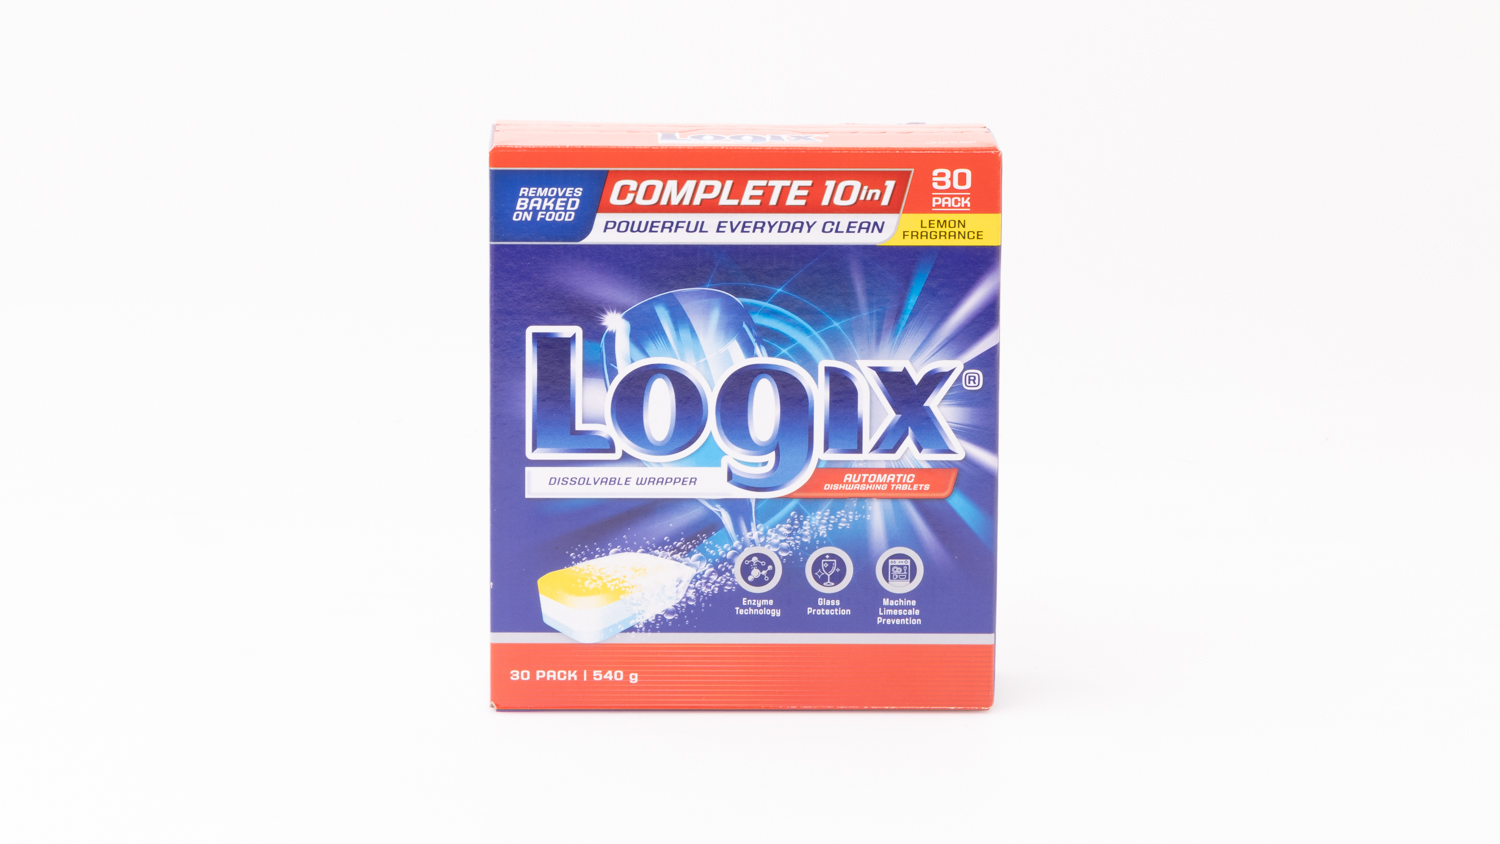 Aldi Logix Complete 10 in 1 Dishwashing Tablets Lemon Fragrance carousel image